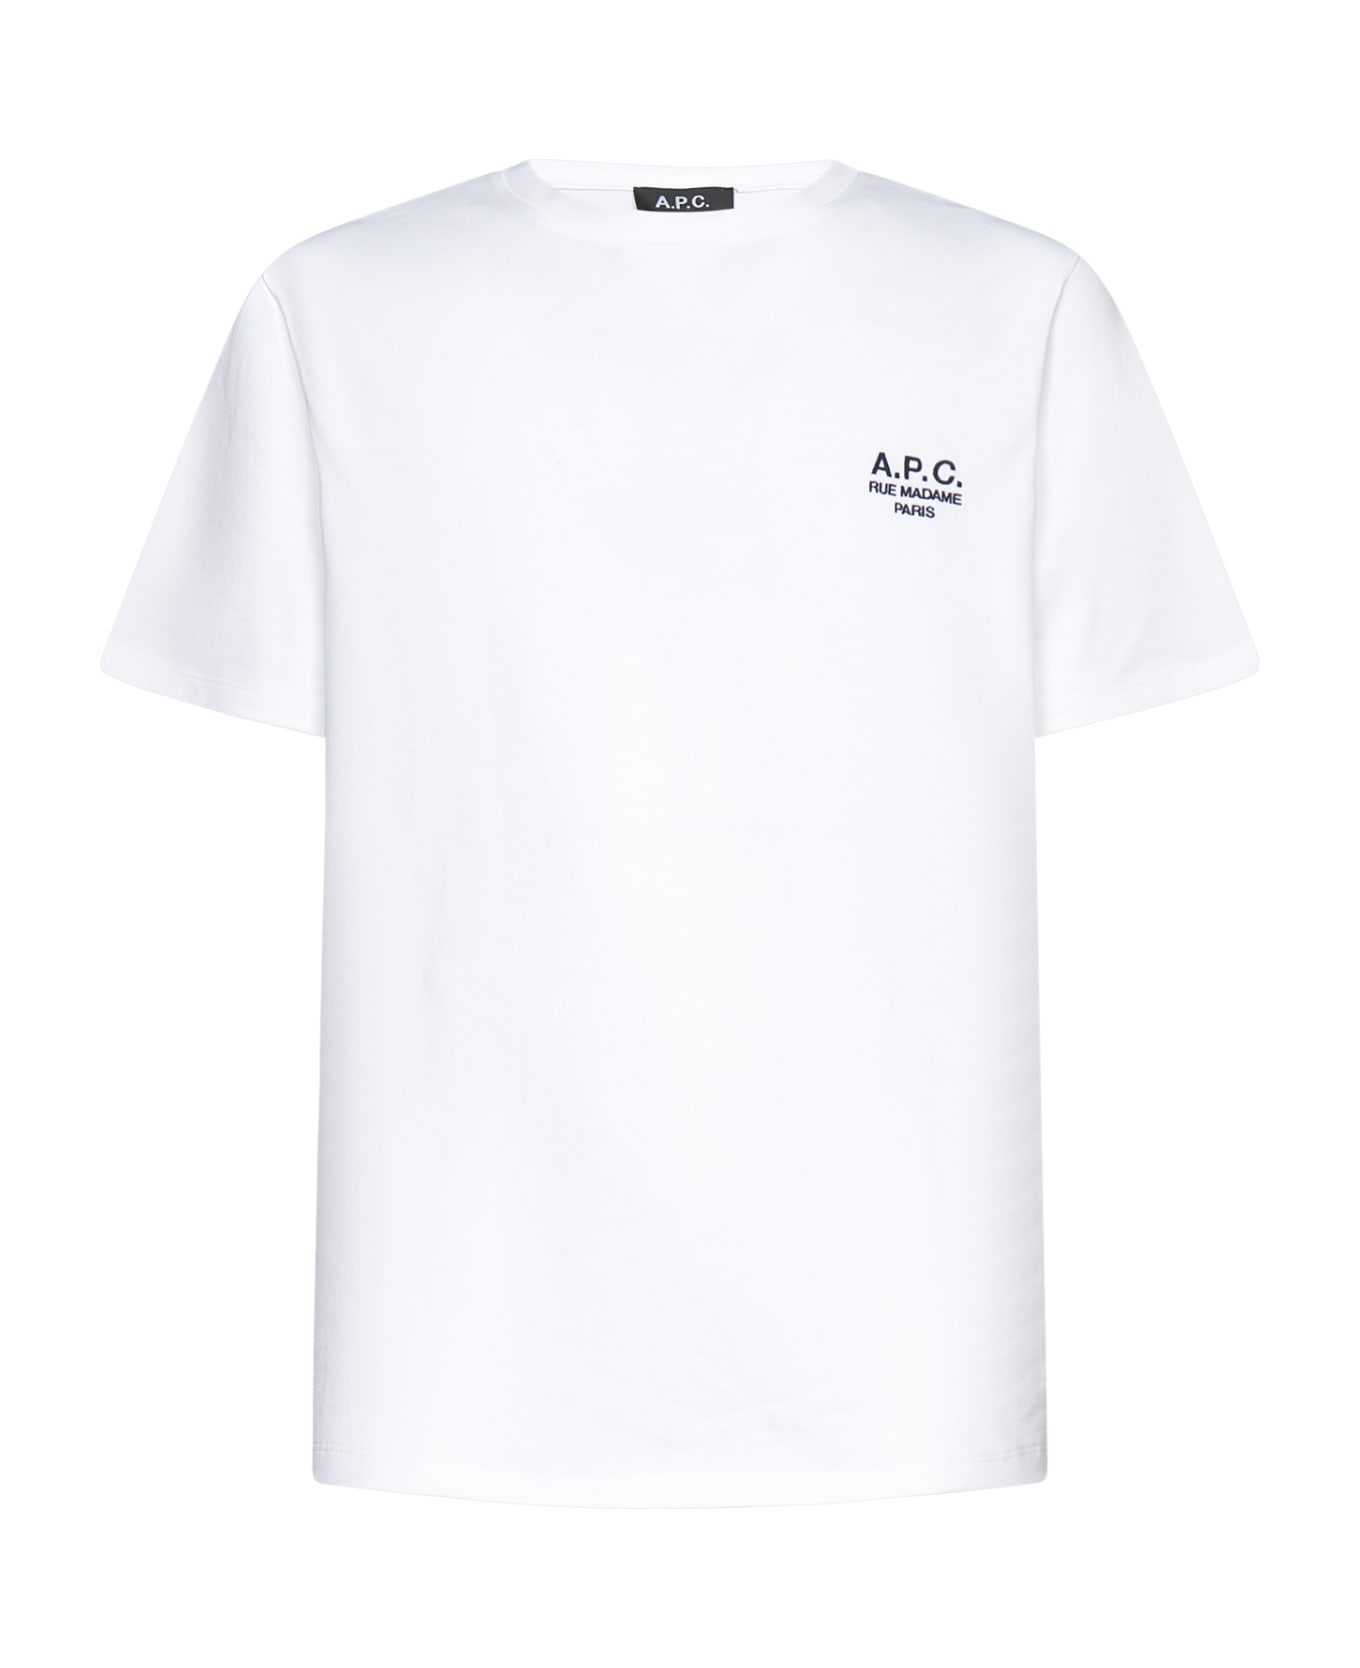 A.P.C. T-Shirt - White